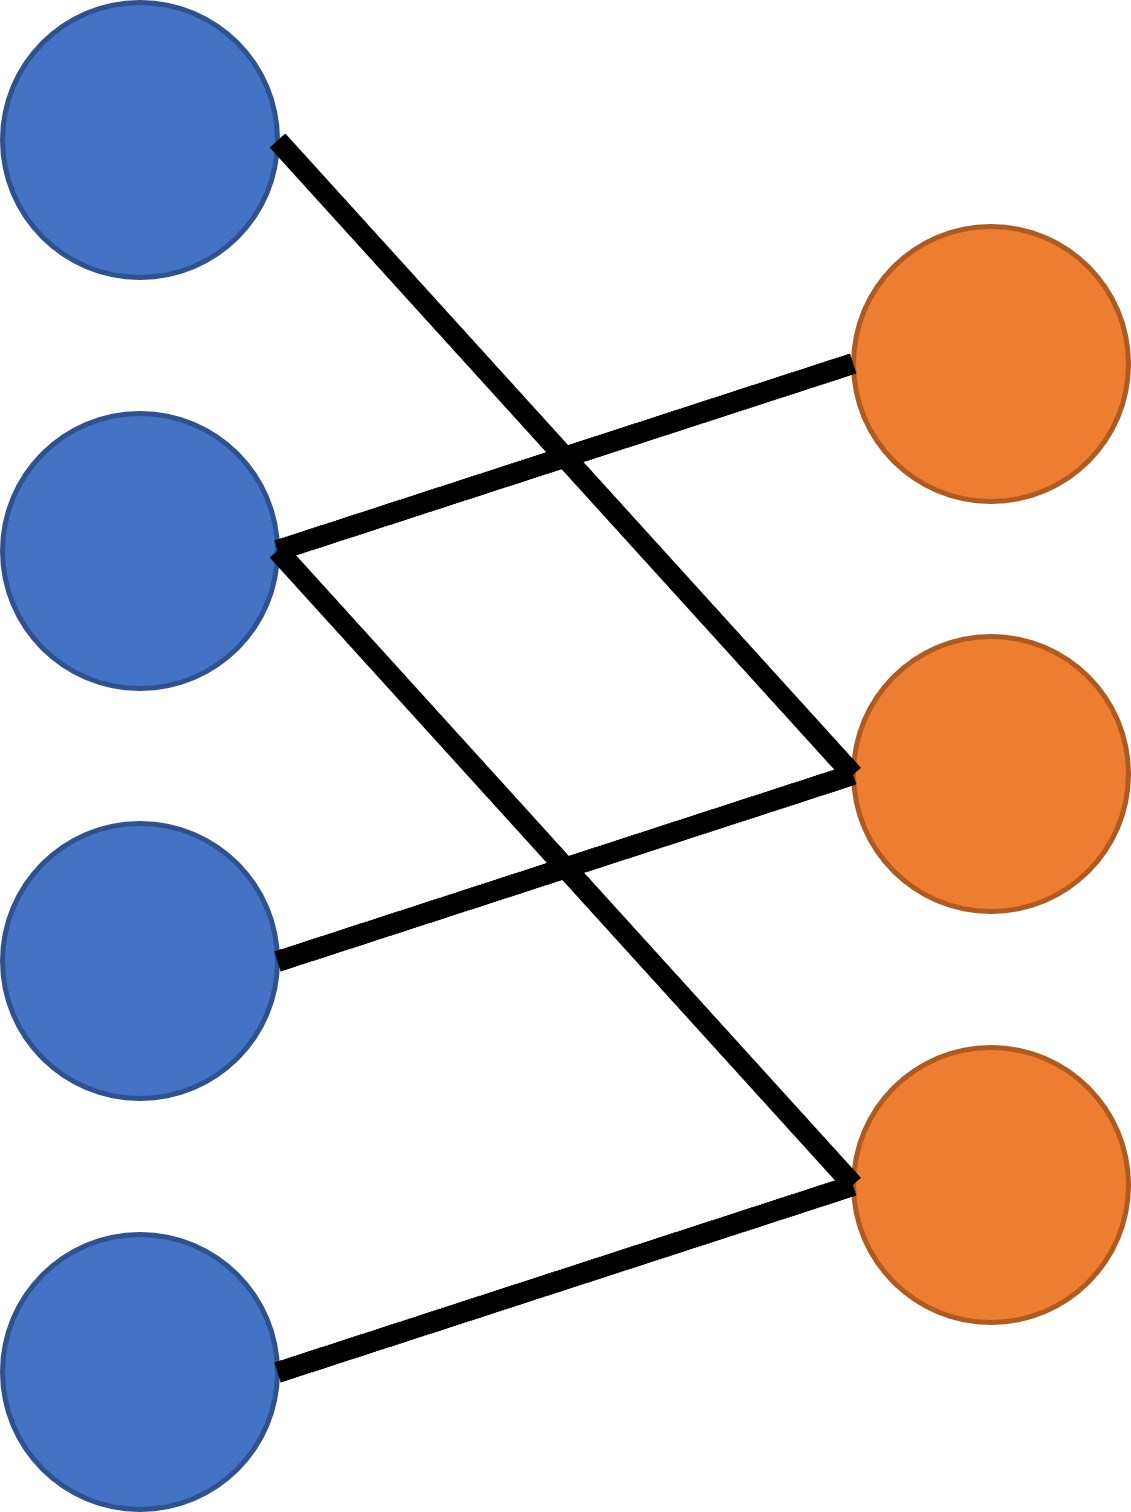 Grafo bipartito, con una hilera de nodos azules a la izquierda conectados a una hilera de nodos naranjas a la derecha.